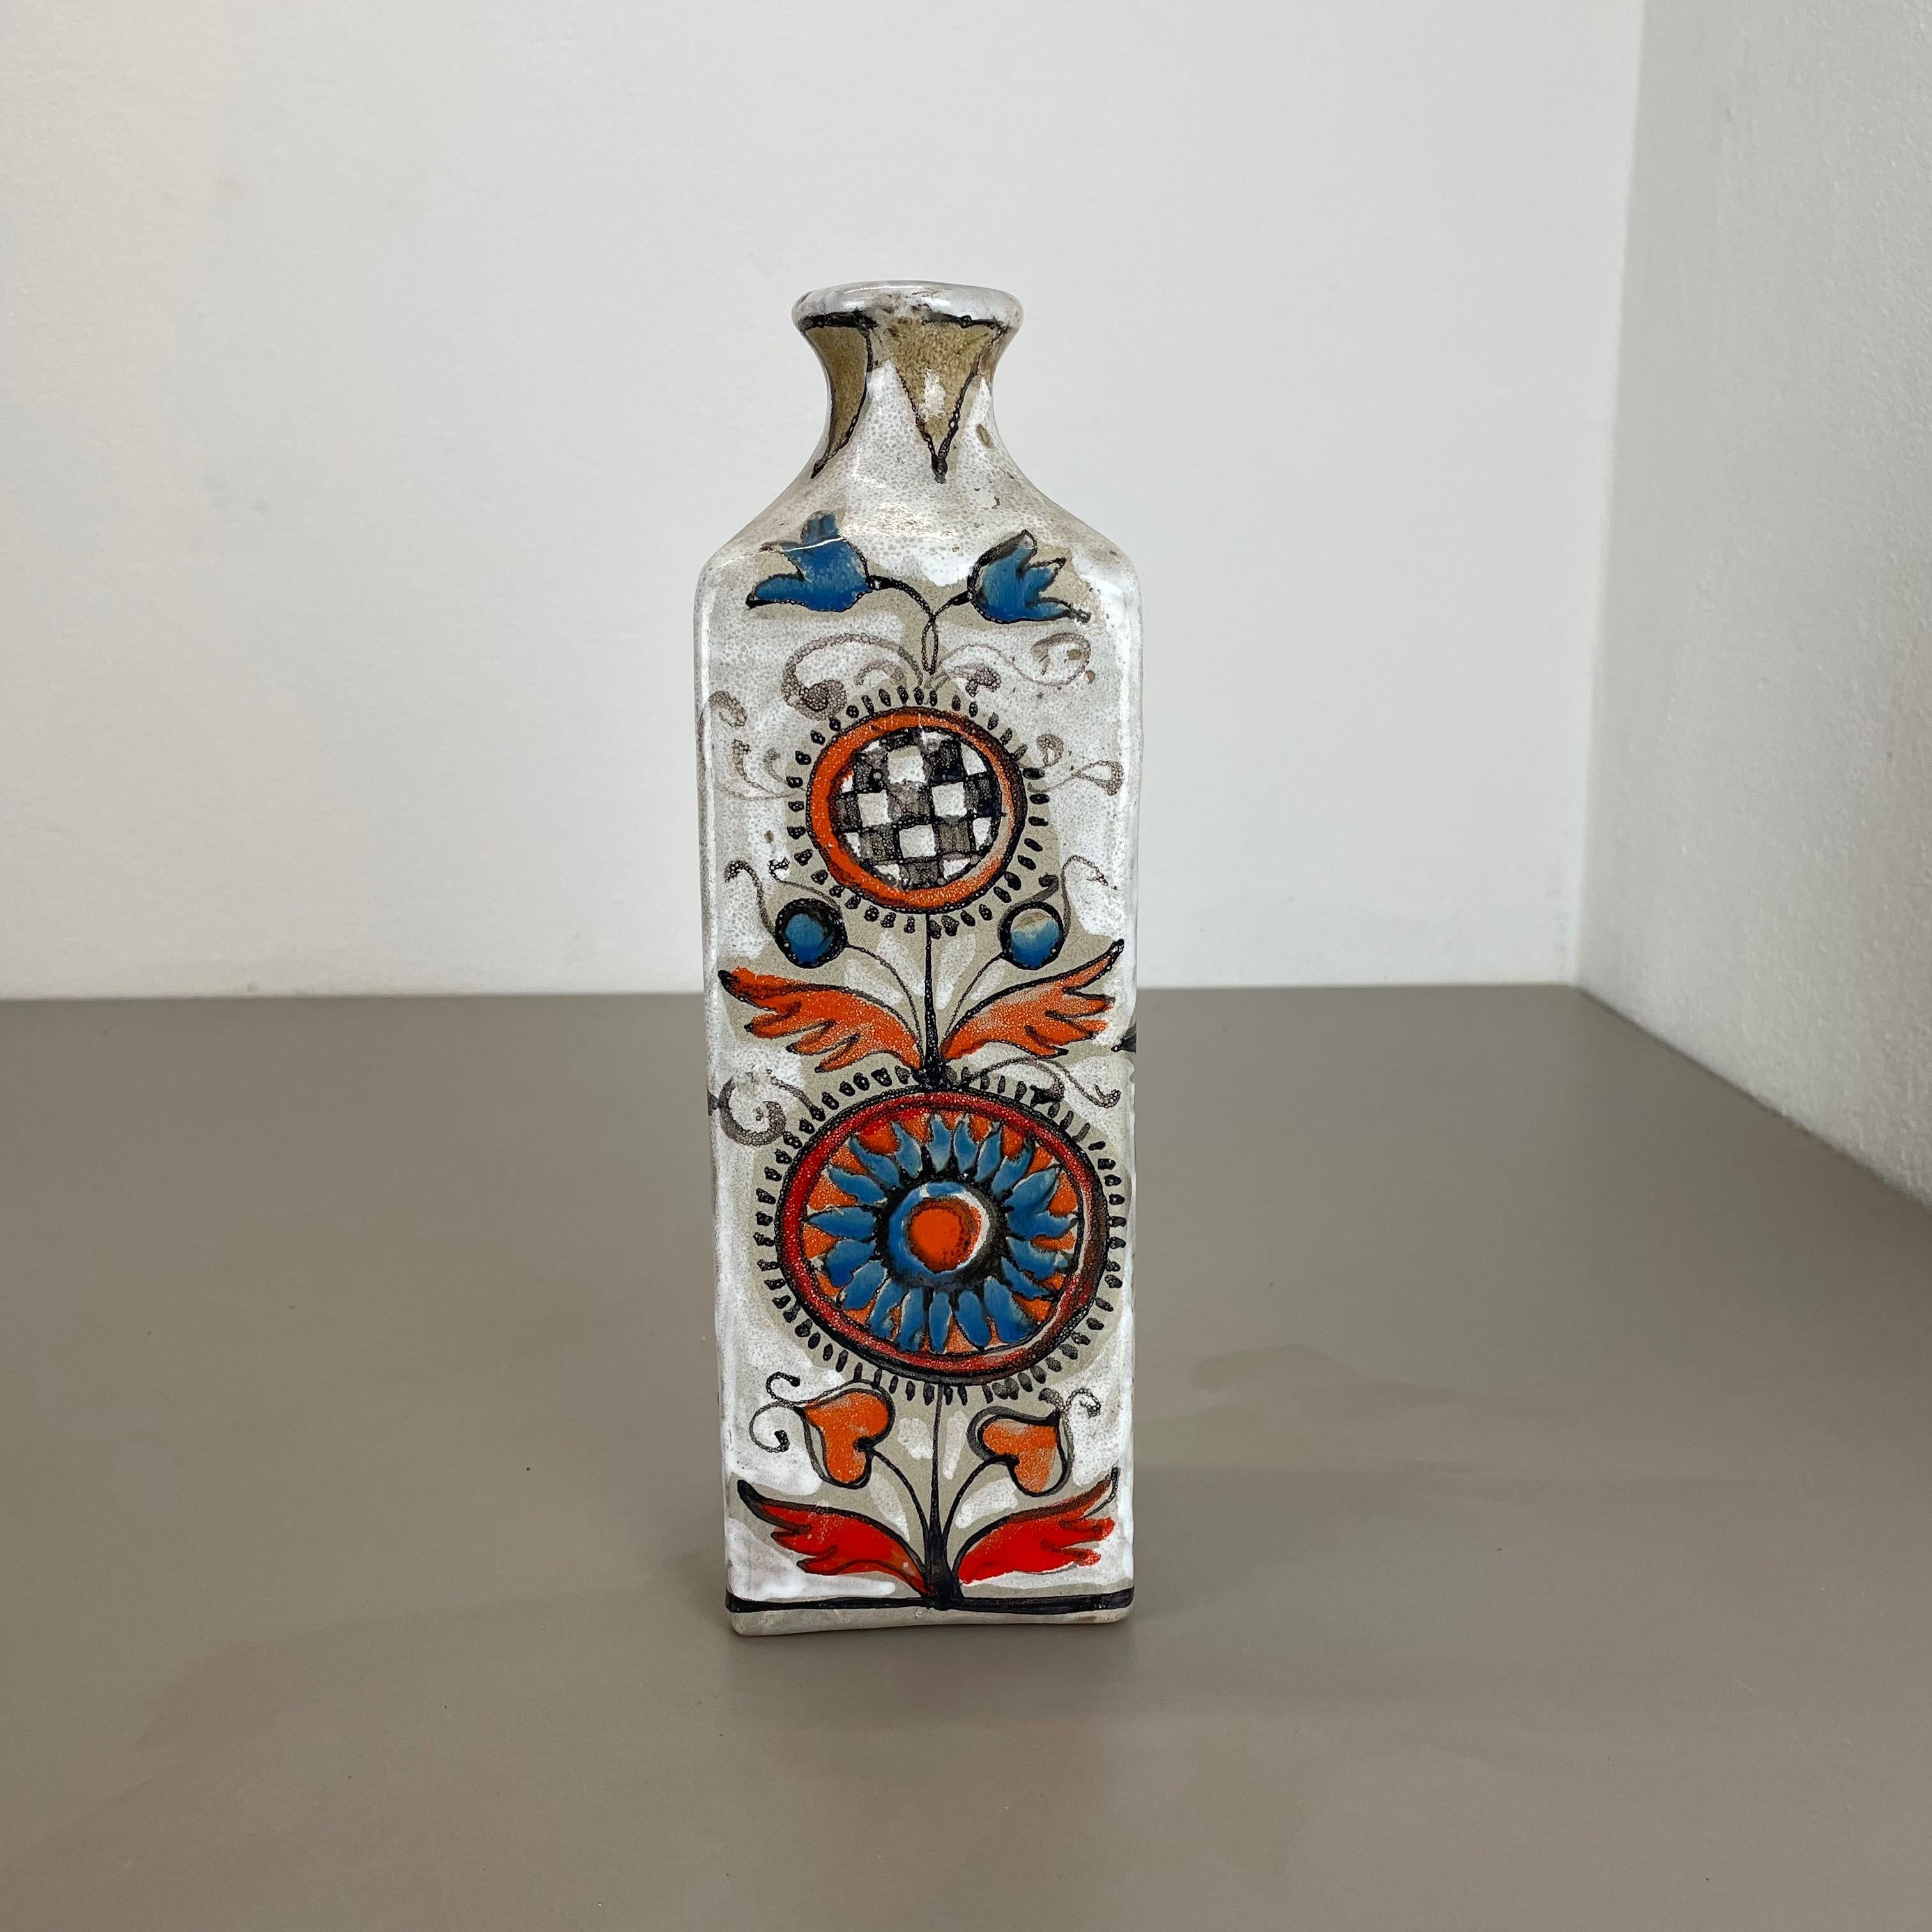 Artikel:

Vase aus Keramik


Produzent:

Elios Schiavon, Italien


Jahrzehnt:

1970s



Diese originale Vintage-Vase von Studio Pottery wurde in den 1970er Jahren von Elios Schiavon Ceramics in Italien hergestellt. Seltenes Objekt in einer schönen